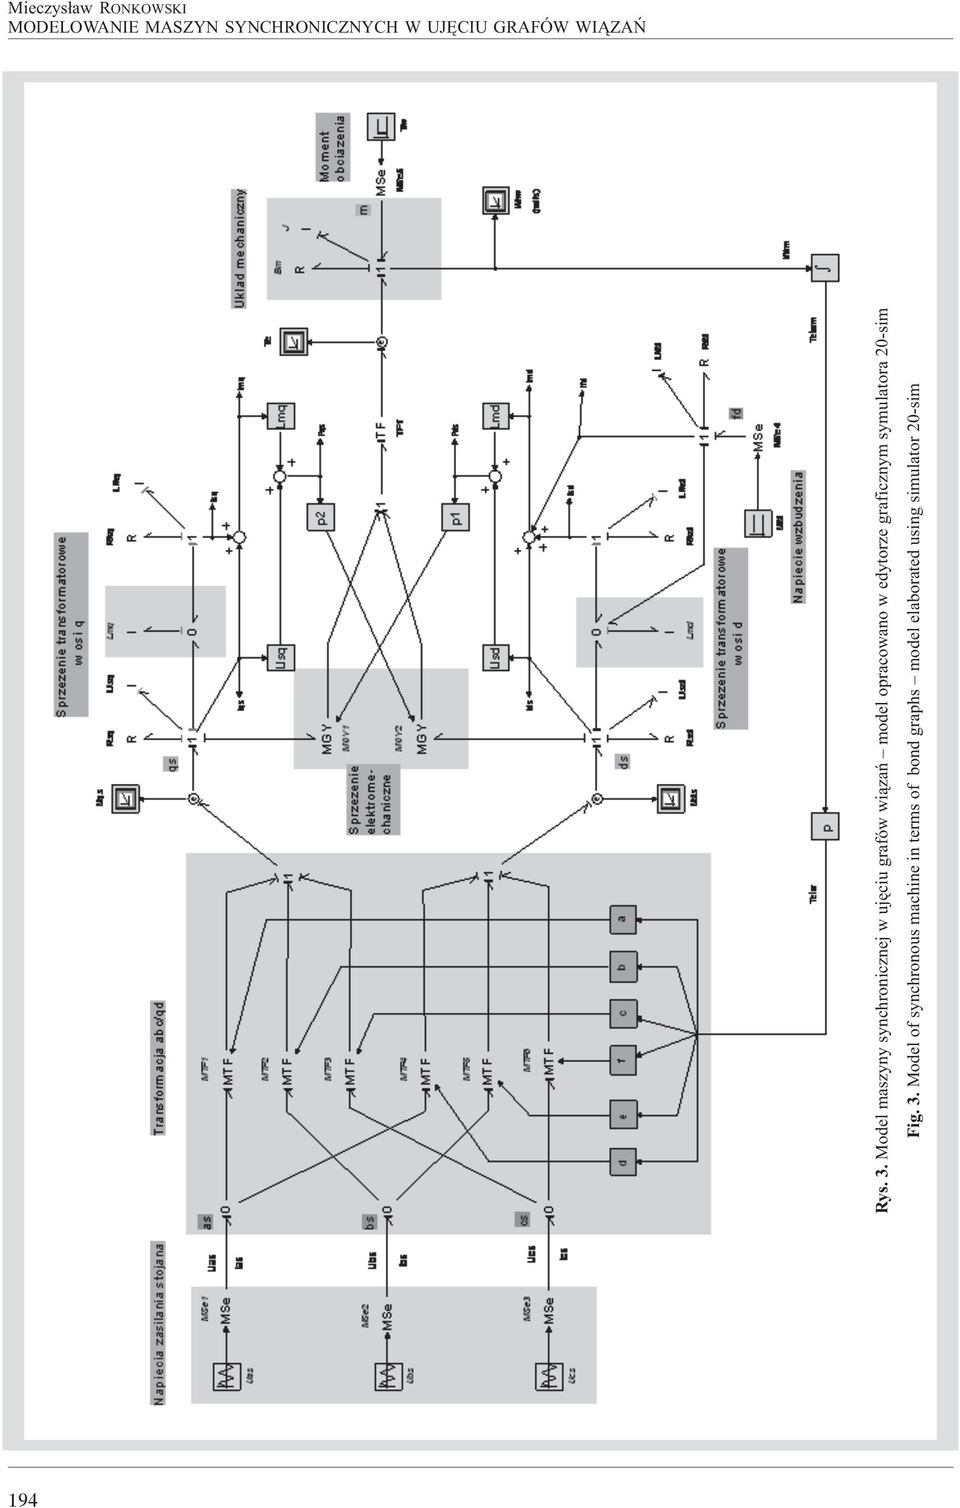 Model maszyny synchronicznej w ujêciu grafów wi¹zañ model opracowano w